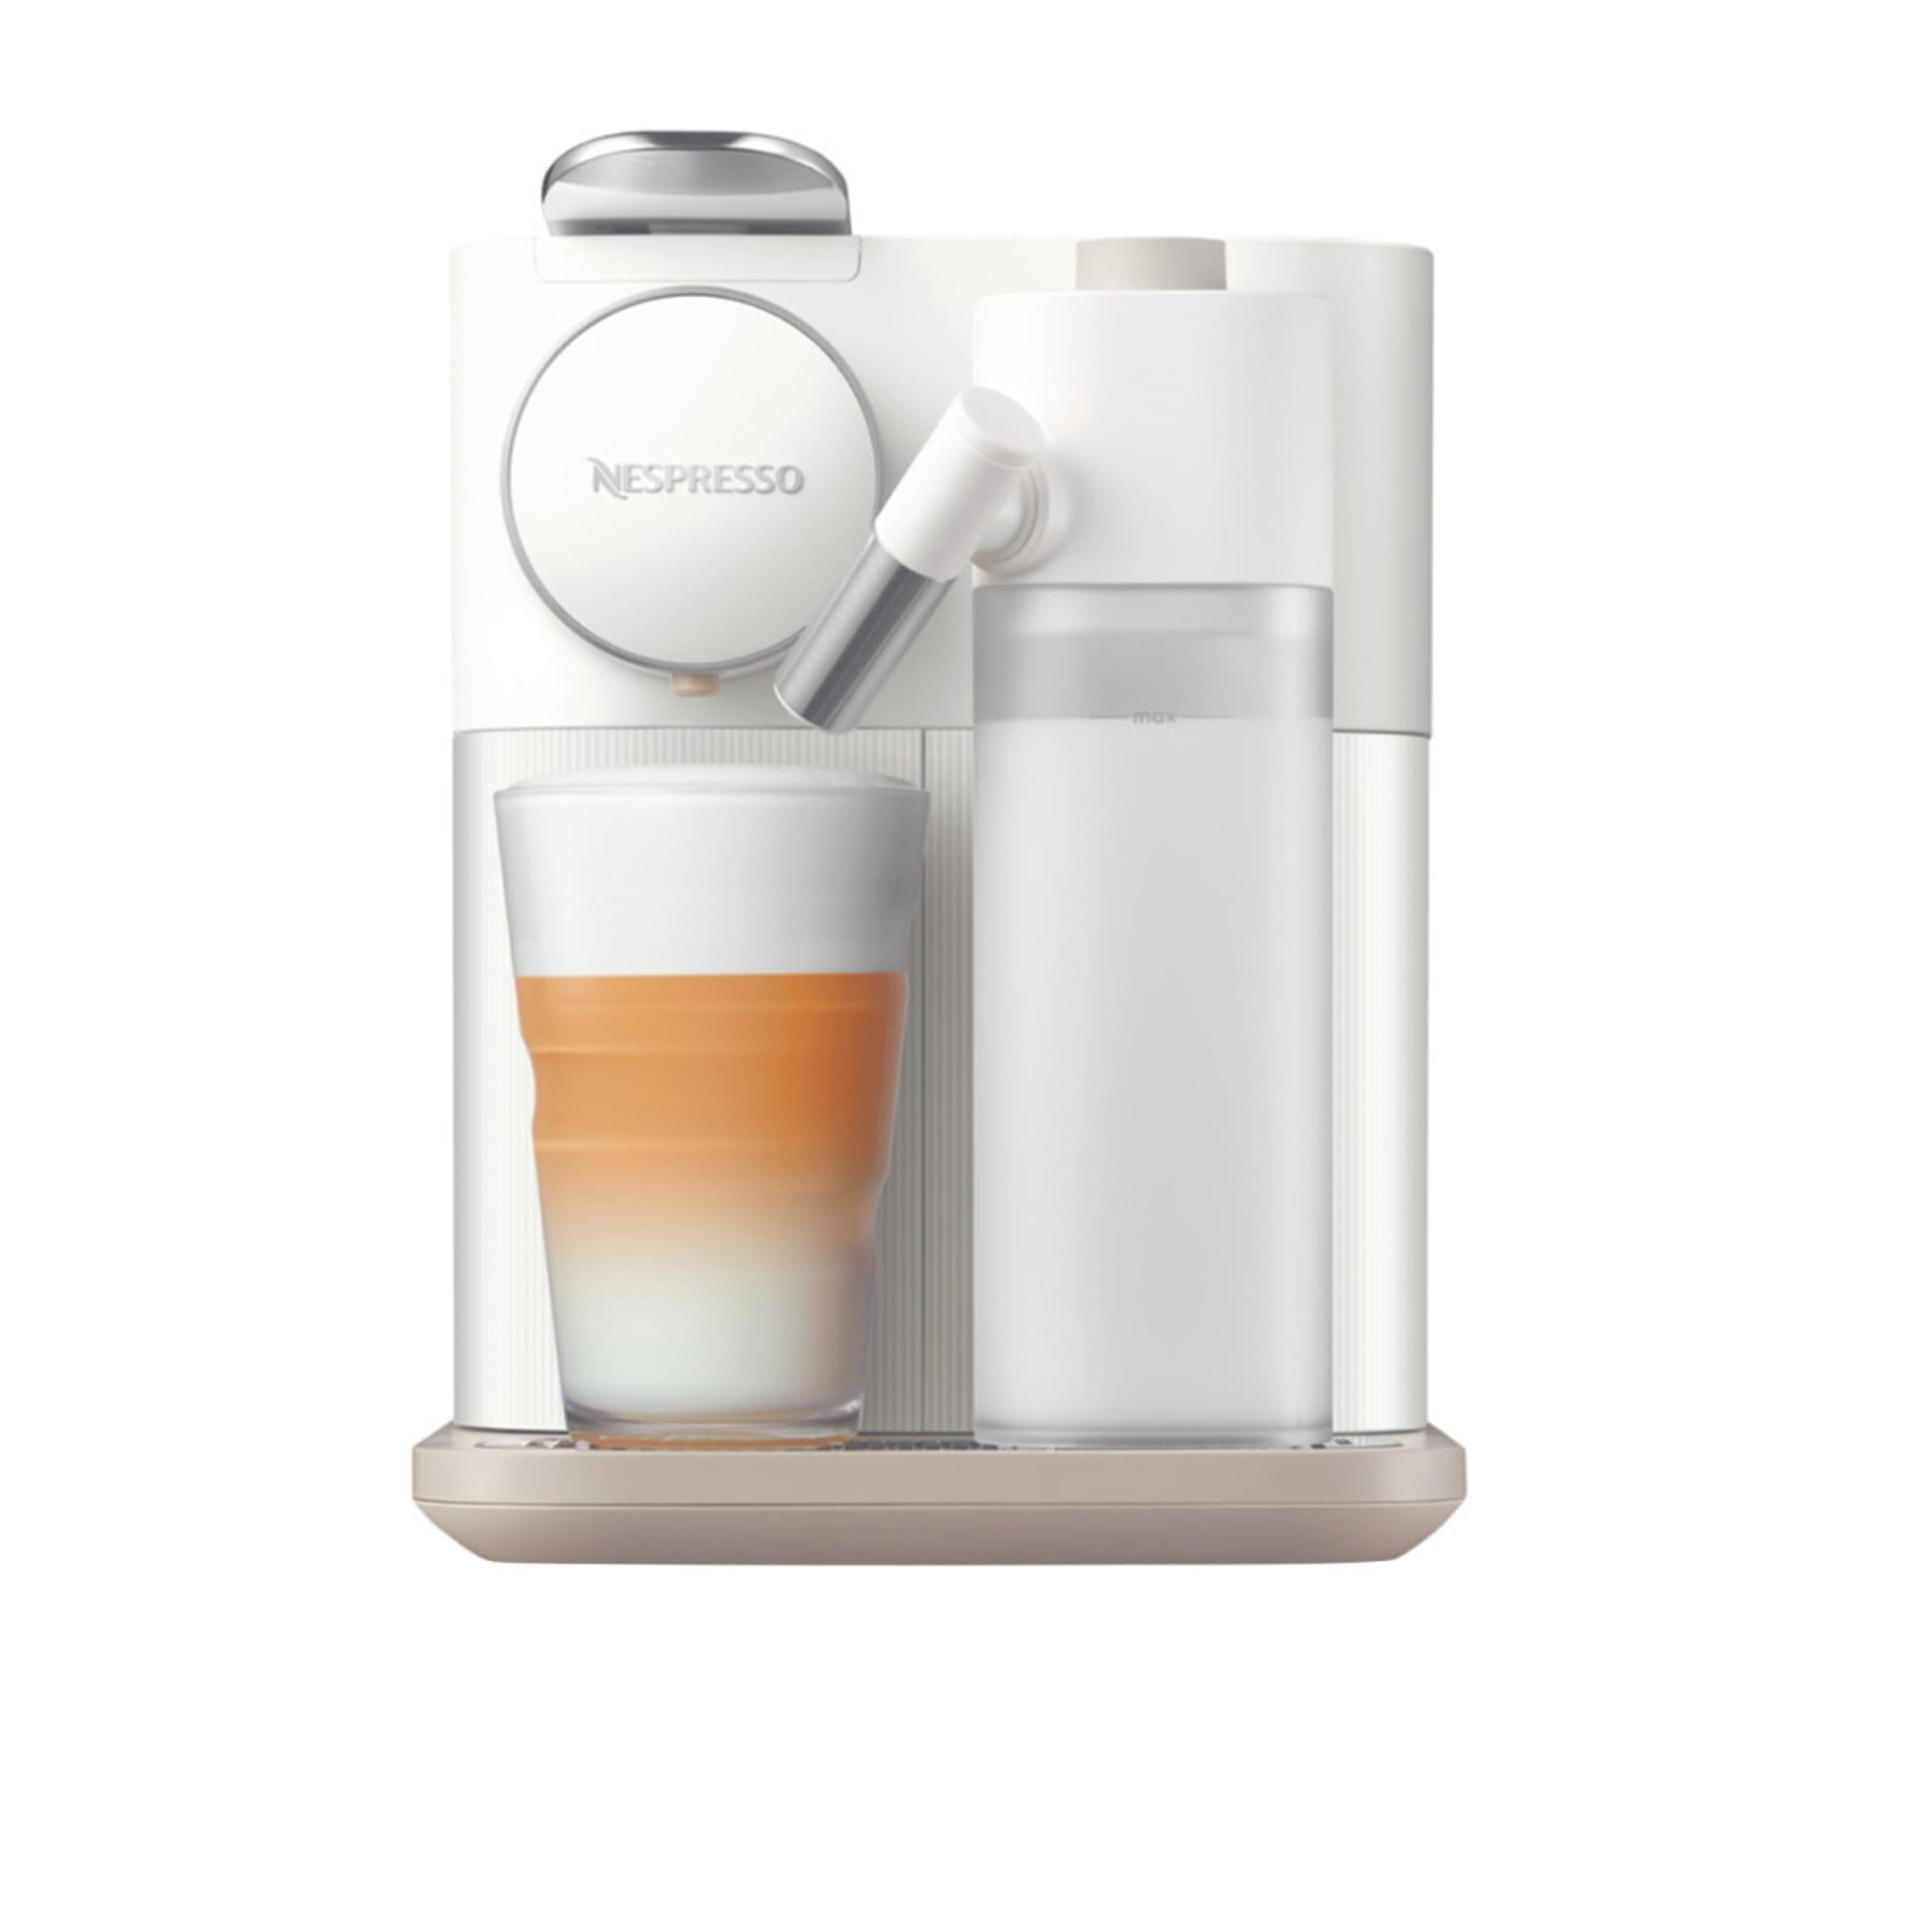 DeLonghi Nespresso Gran Lattisima EN650W Automatic Capsule Coffee Machine White Image 5